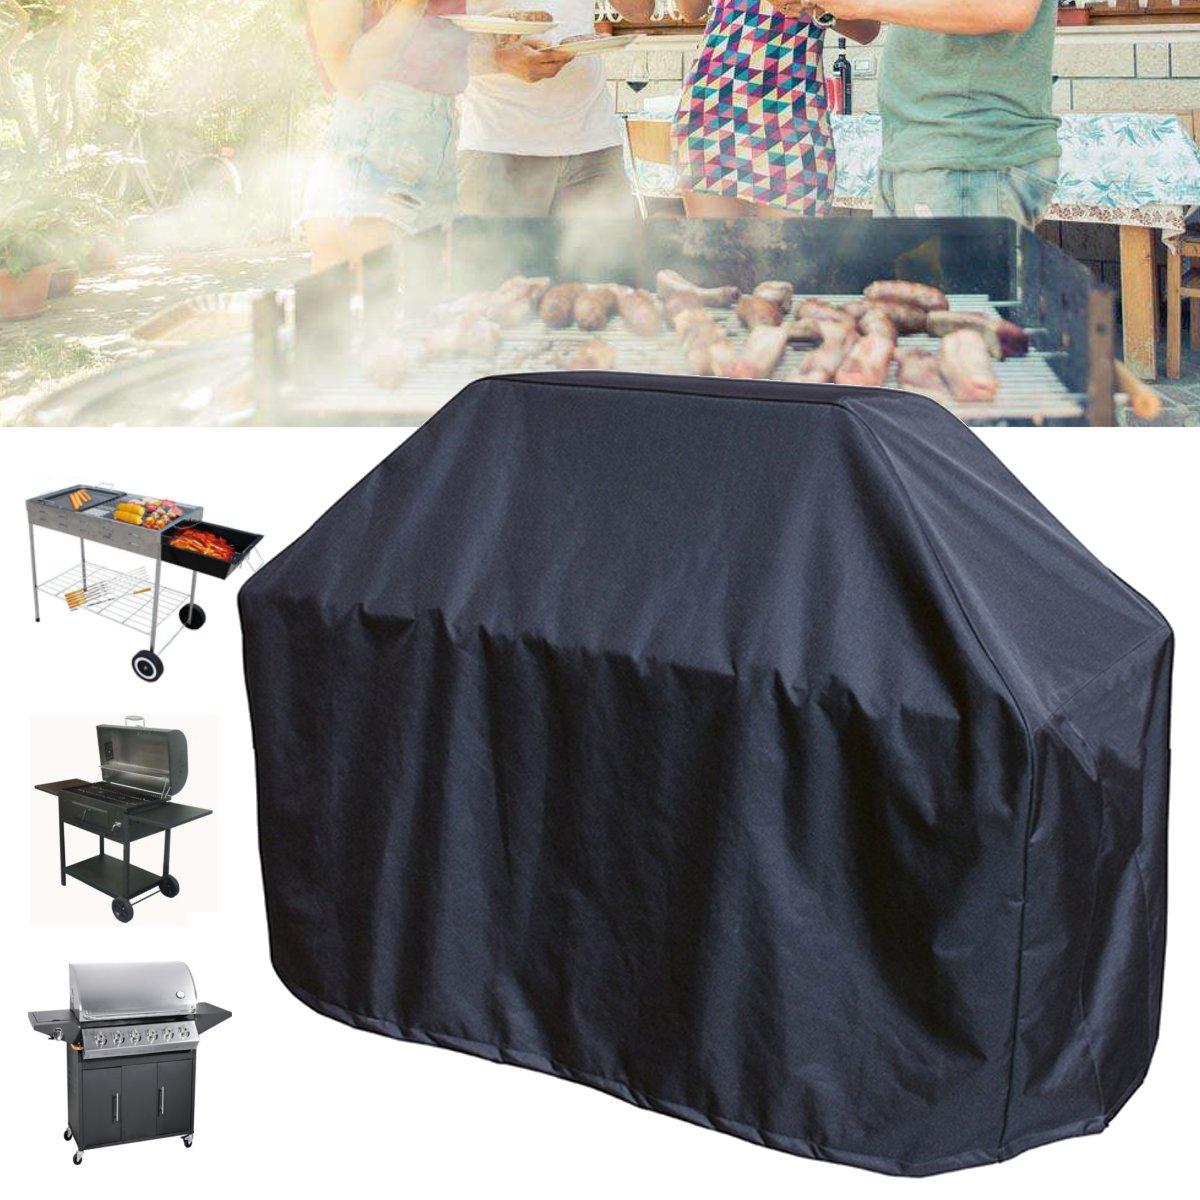 Fekete vízálló BBQ grill takaró 163x61x122cm méretben, védi az esőtől az ételeket a szabadban történő főzés során.